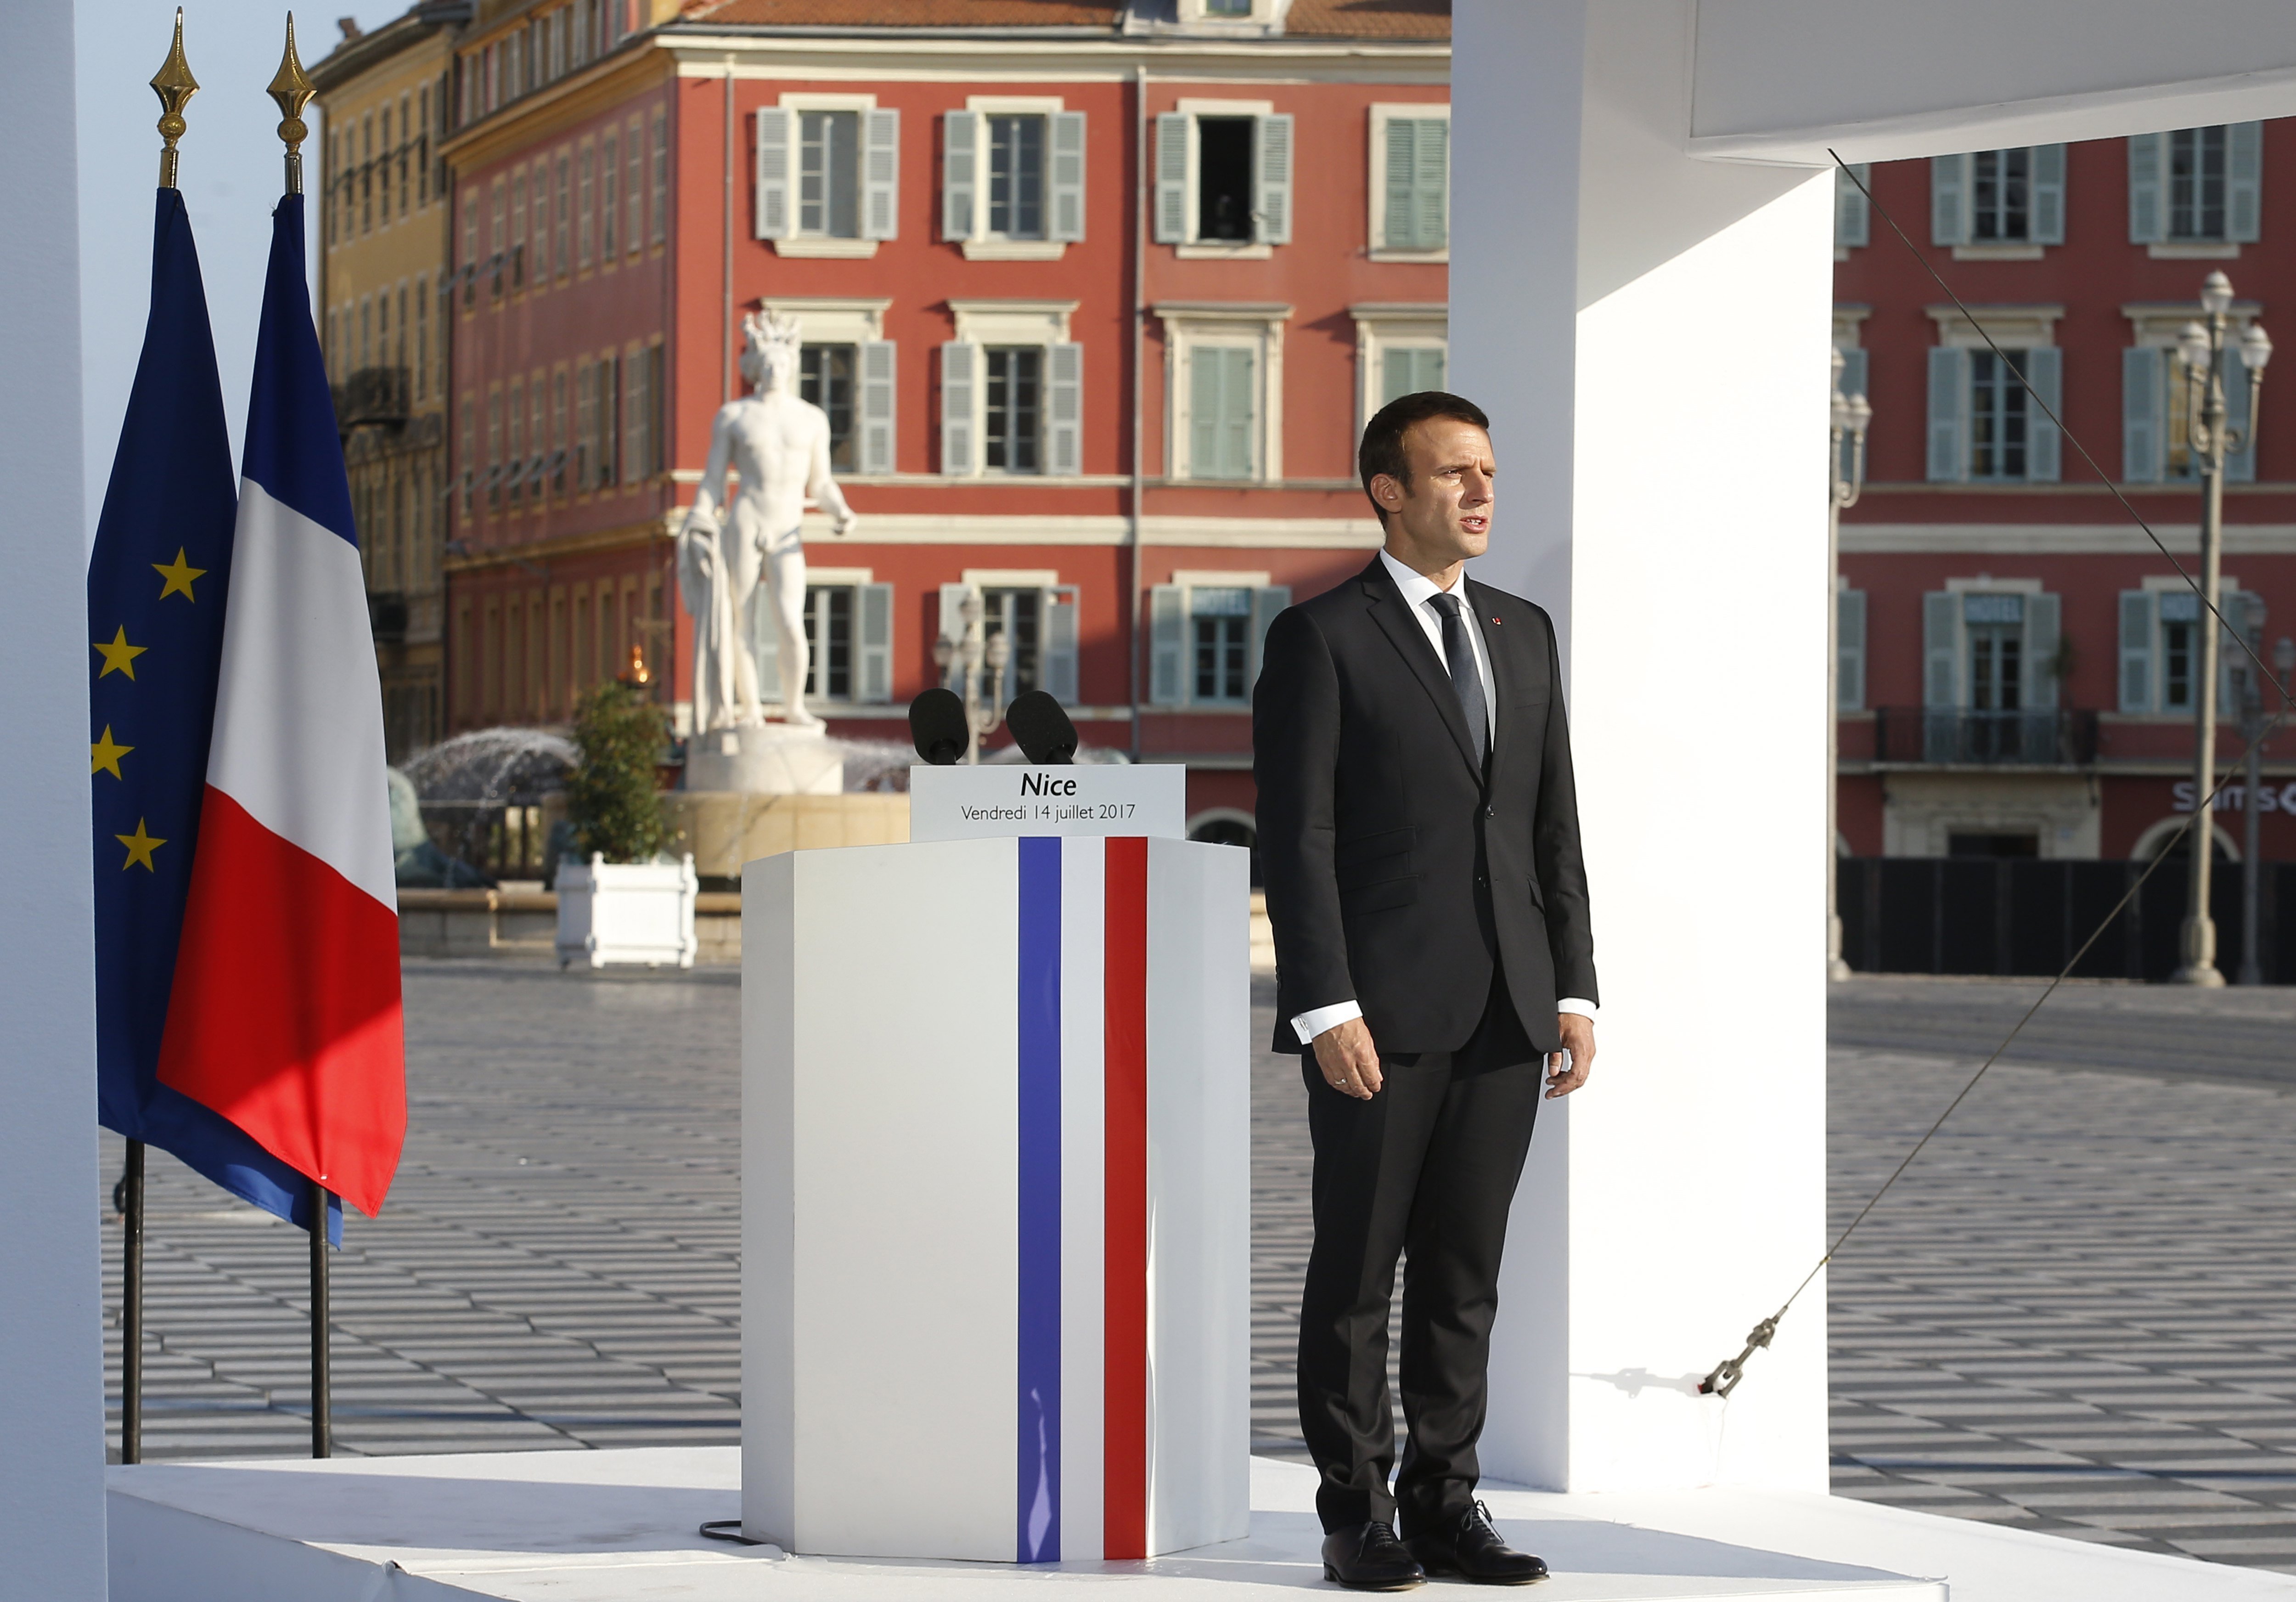 Macron promete a las víctimas de Niza luchar sin cuartel contra el terrorismo